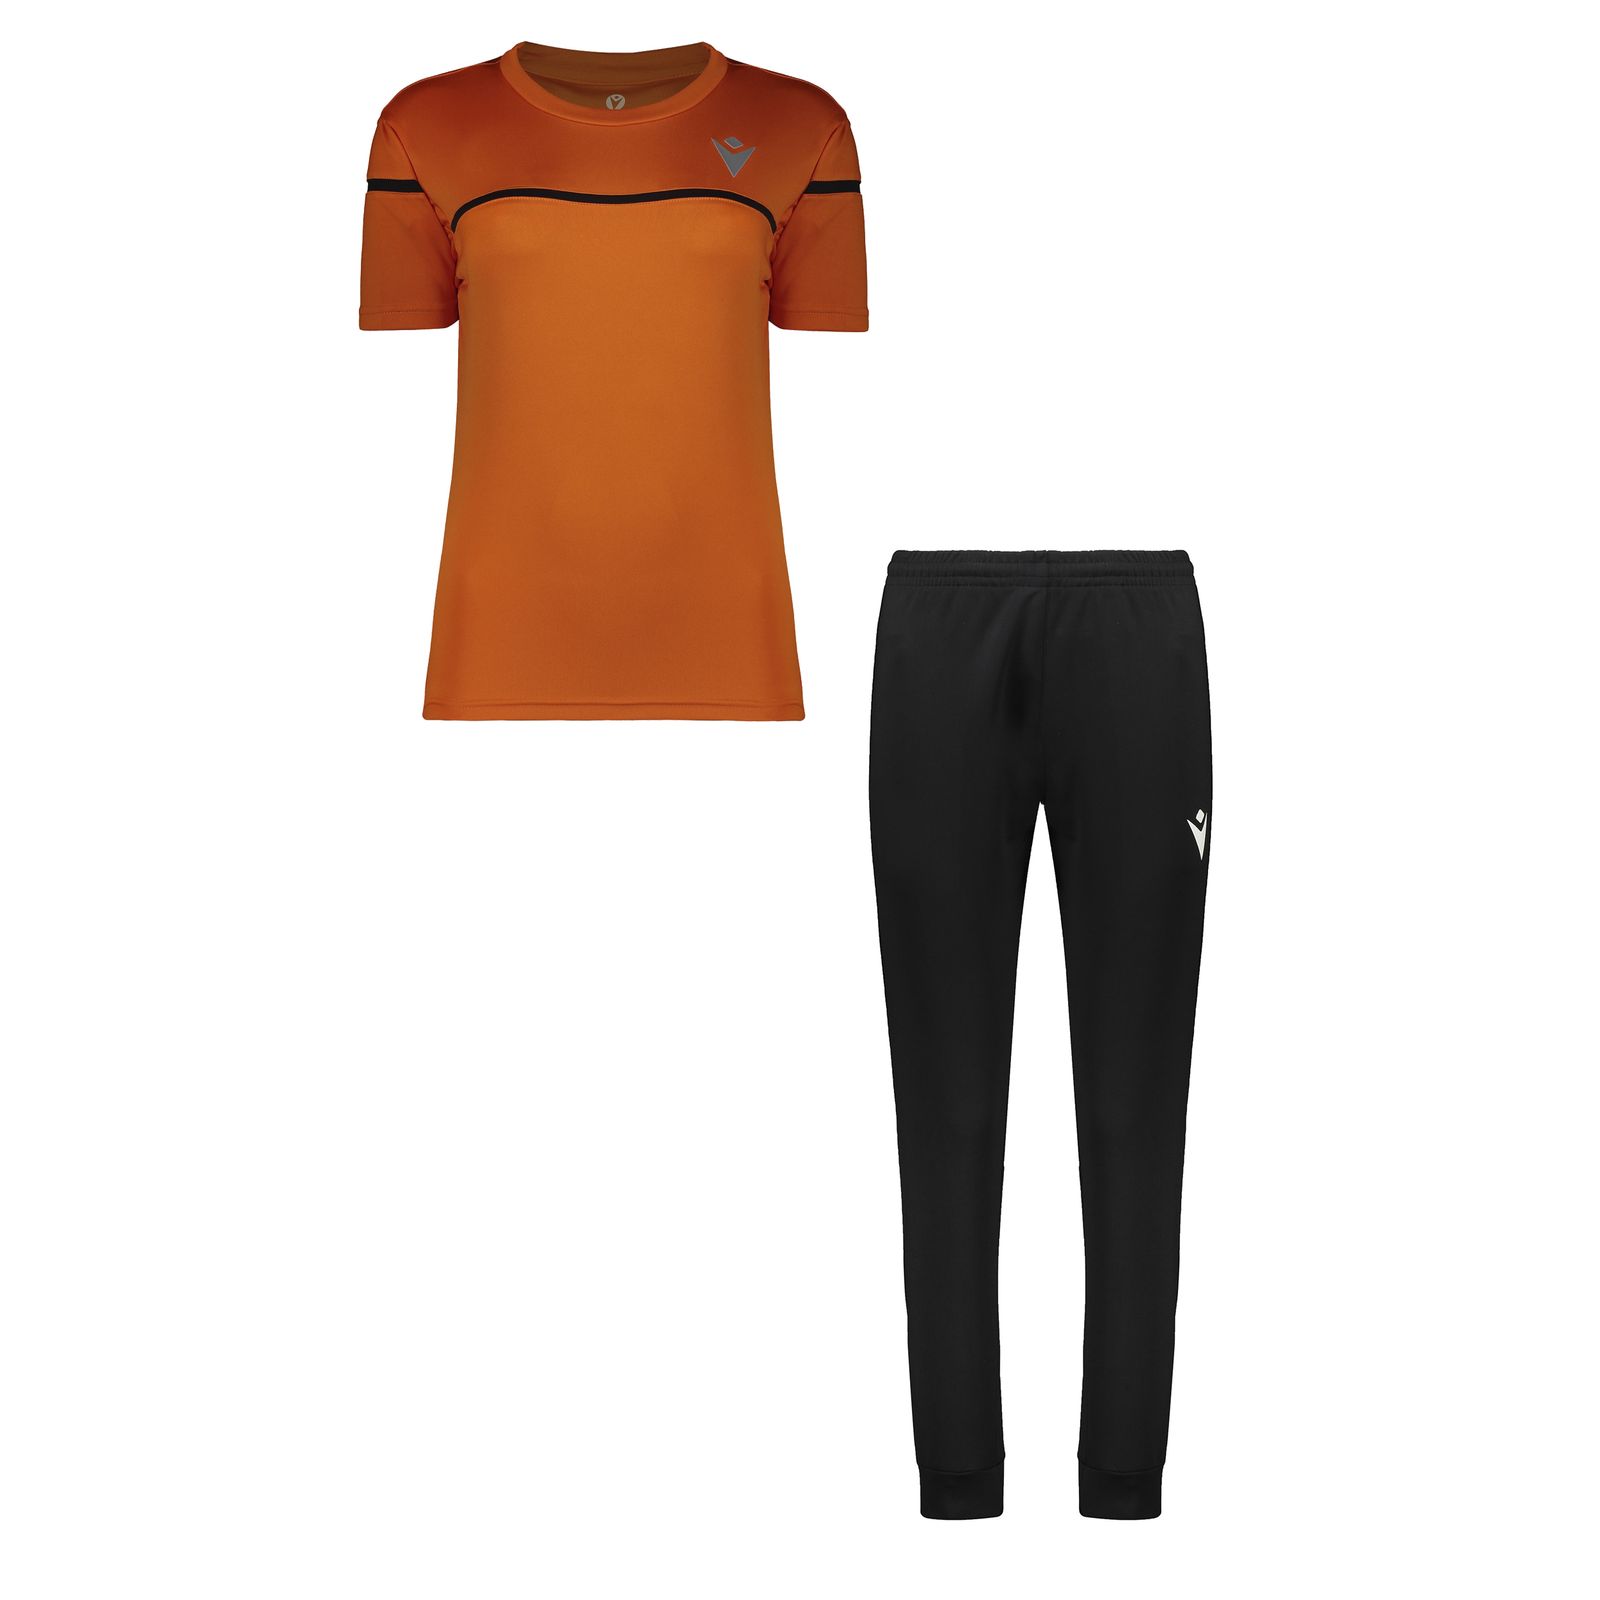 ست تی شرت و شلوار ورزشی زنانه مکرون مدل مارگوت رنگ نارنجی